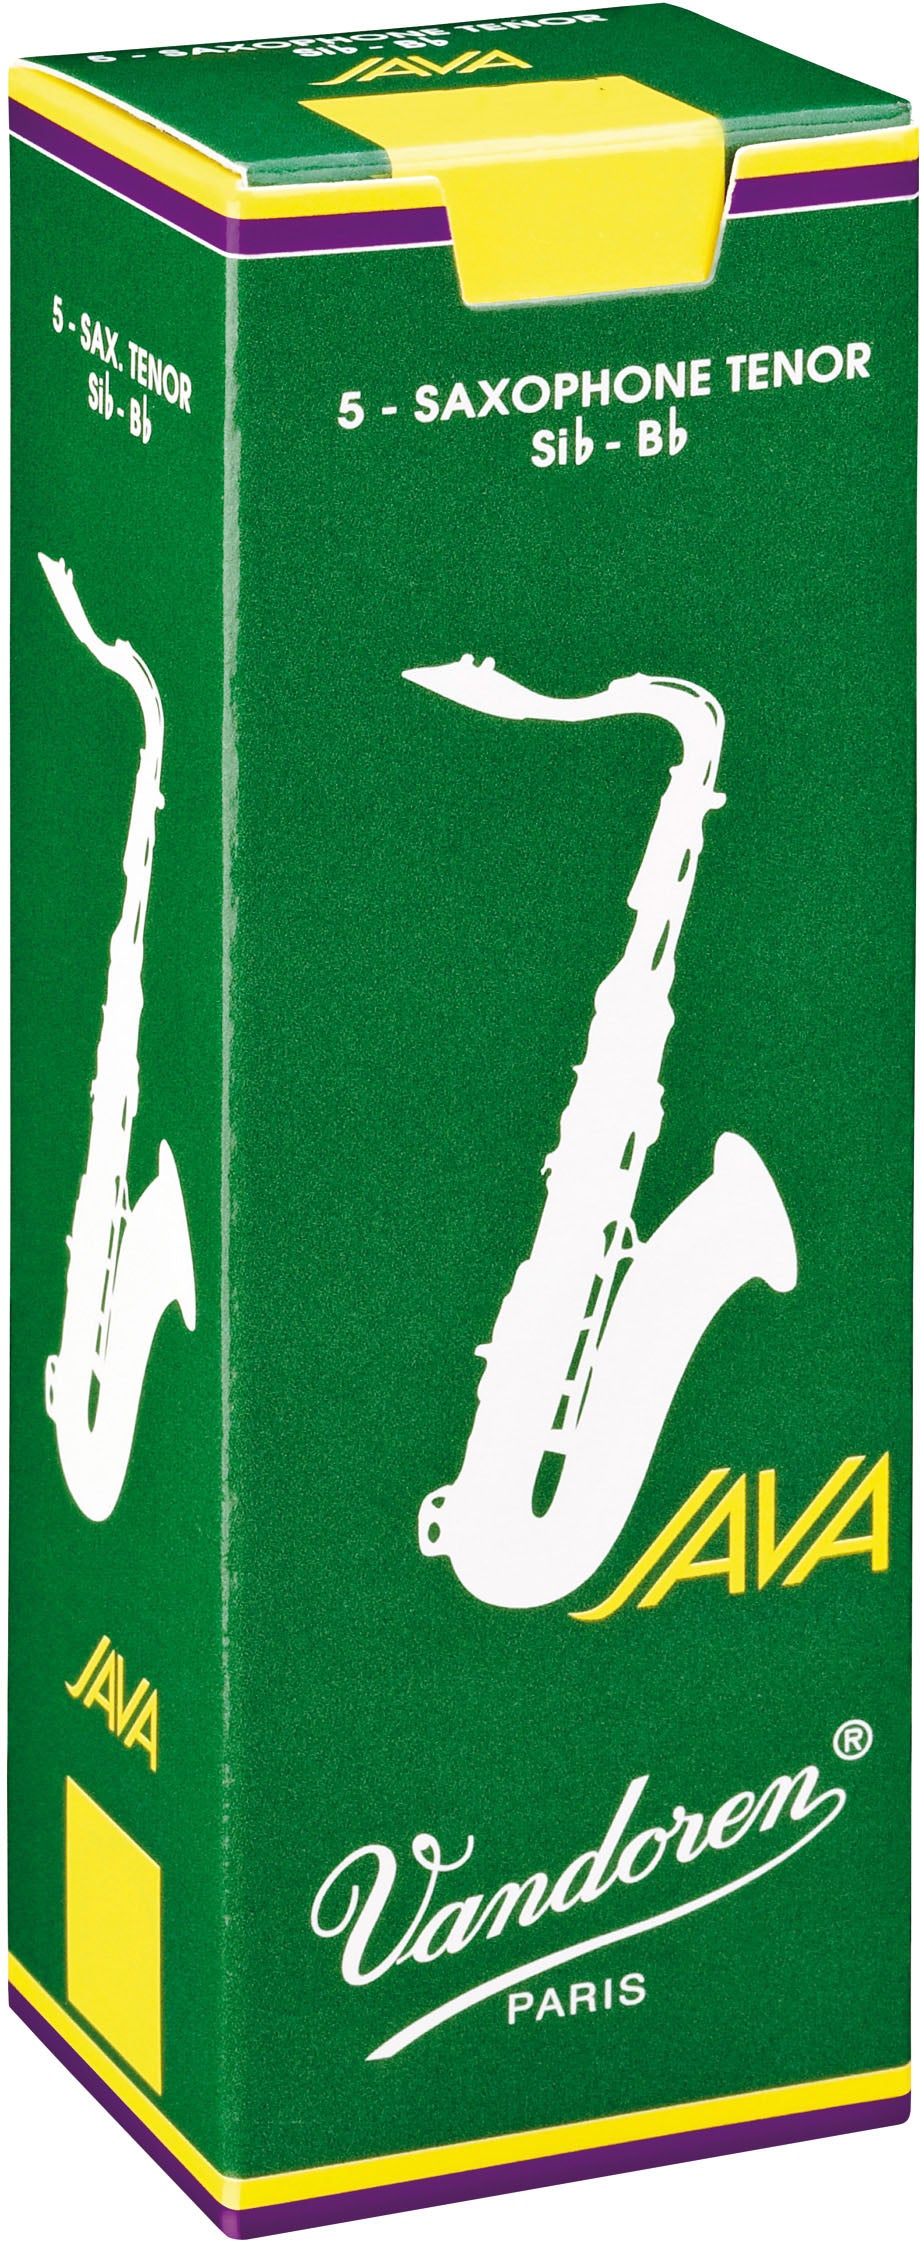 Vandoren Java Tenor Saxophone Reeds, Box of 5 - Strength 3